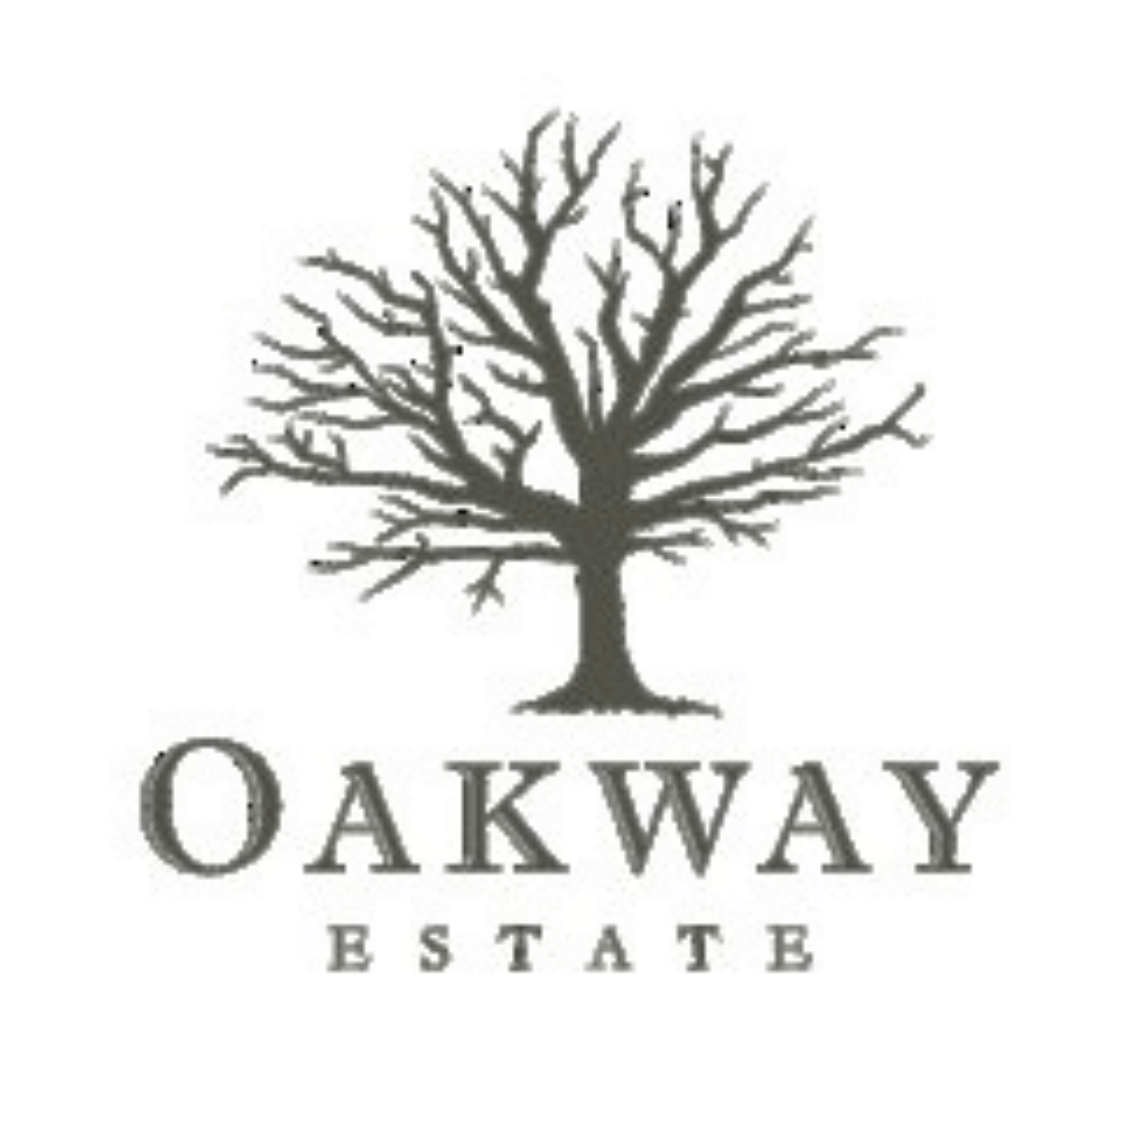 Shop Local Oakway Estate Winery